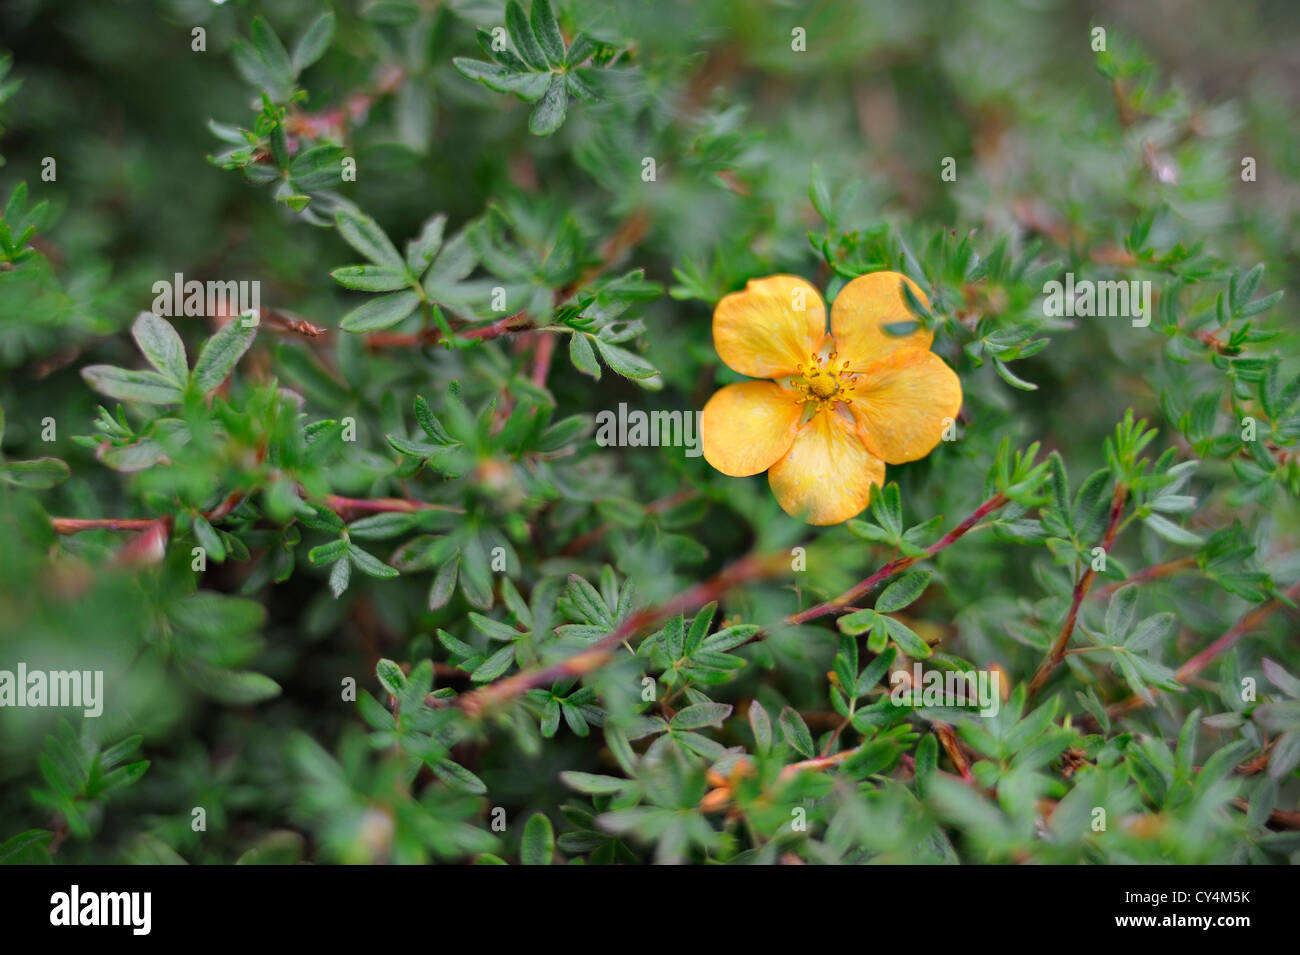 Semi-close-up of golden-yellow potentilla flower and foliage Potentilla Fruticosa Stock Photo